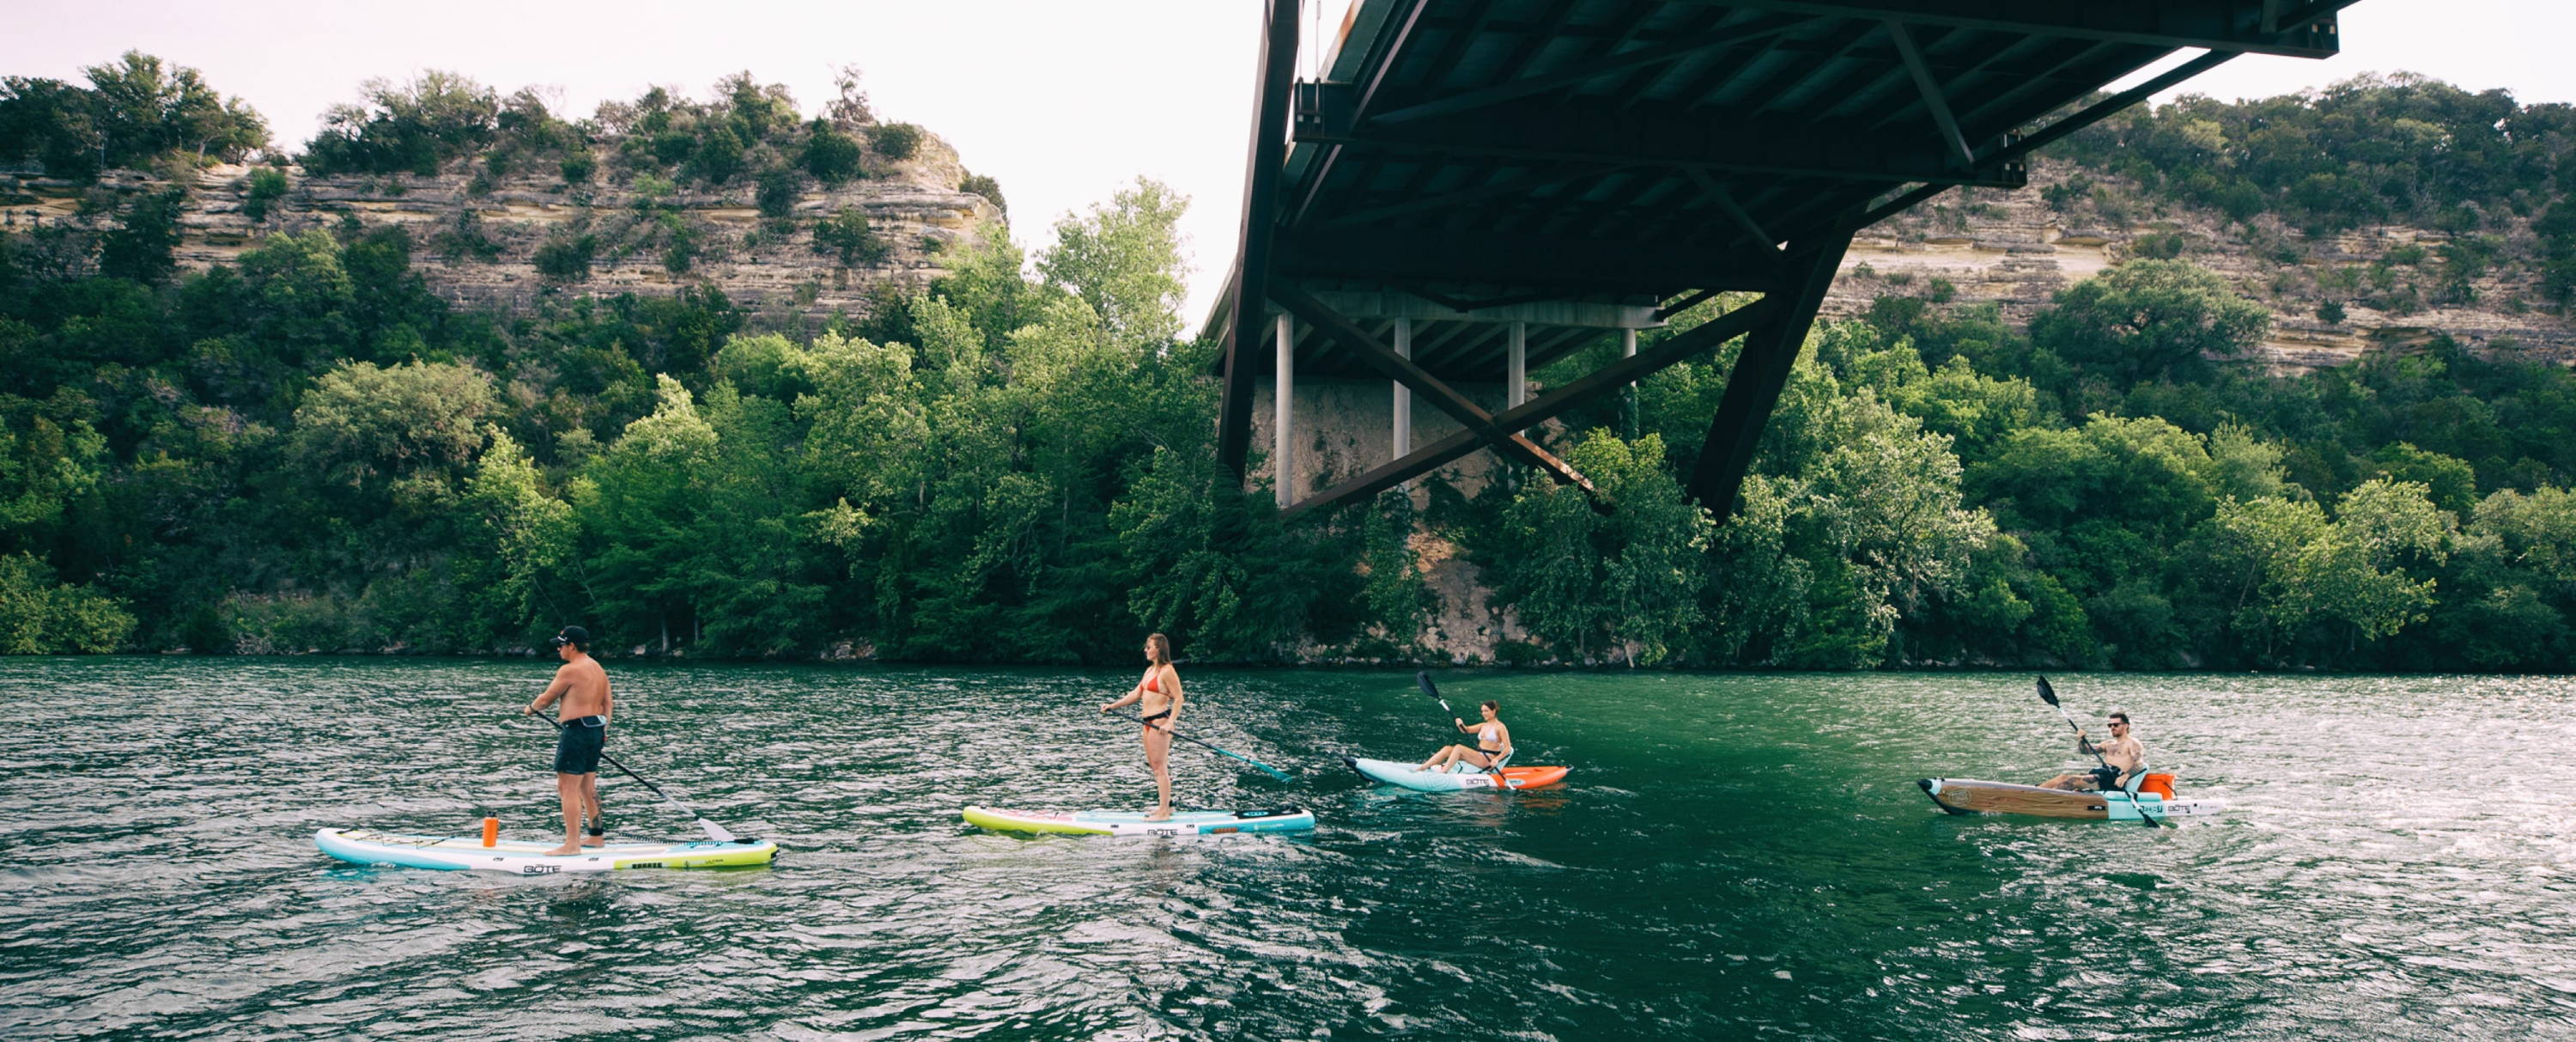 Exploring Austin waters